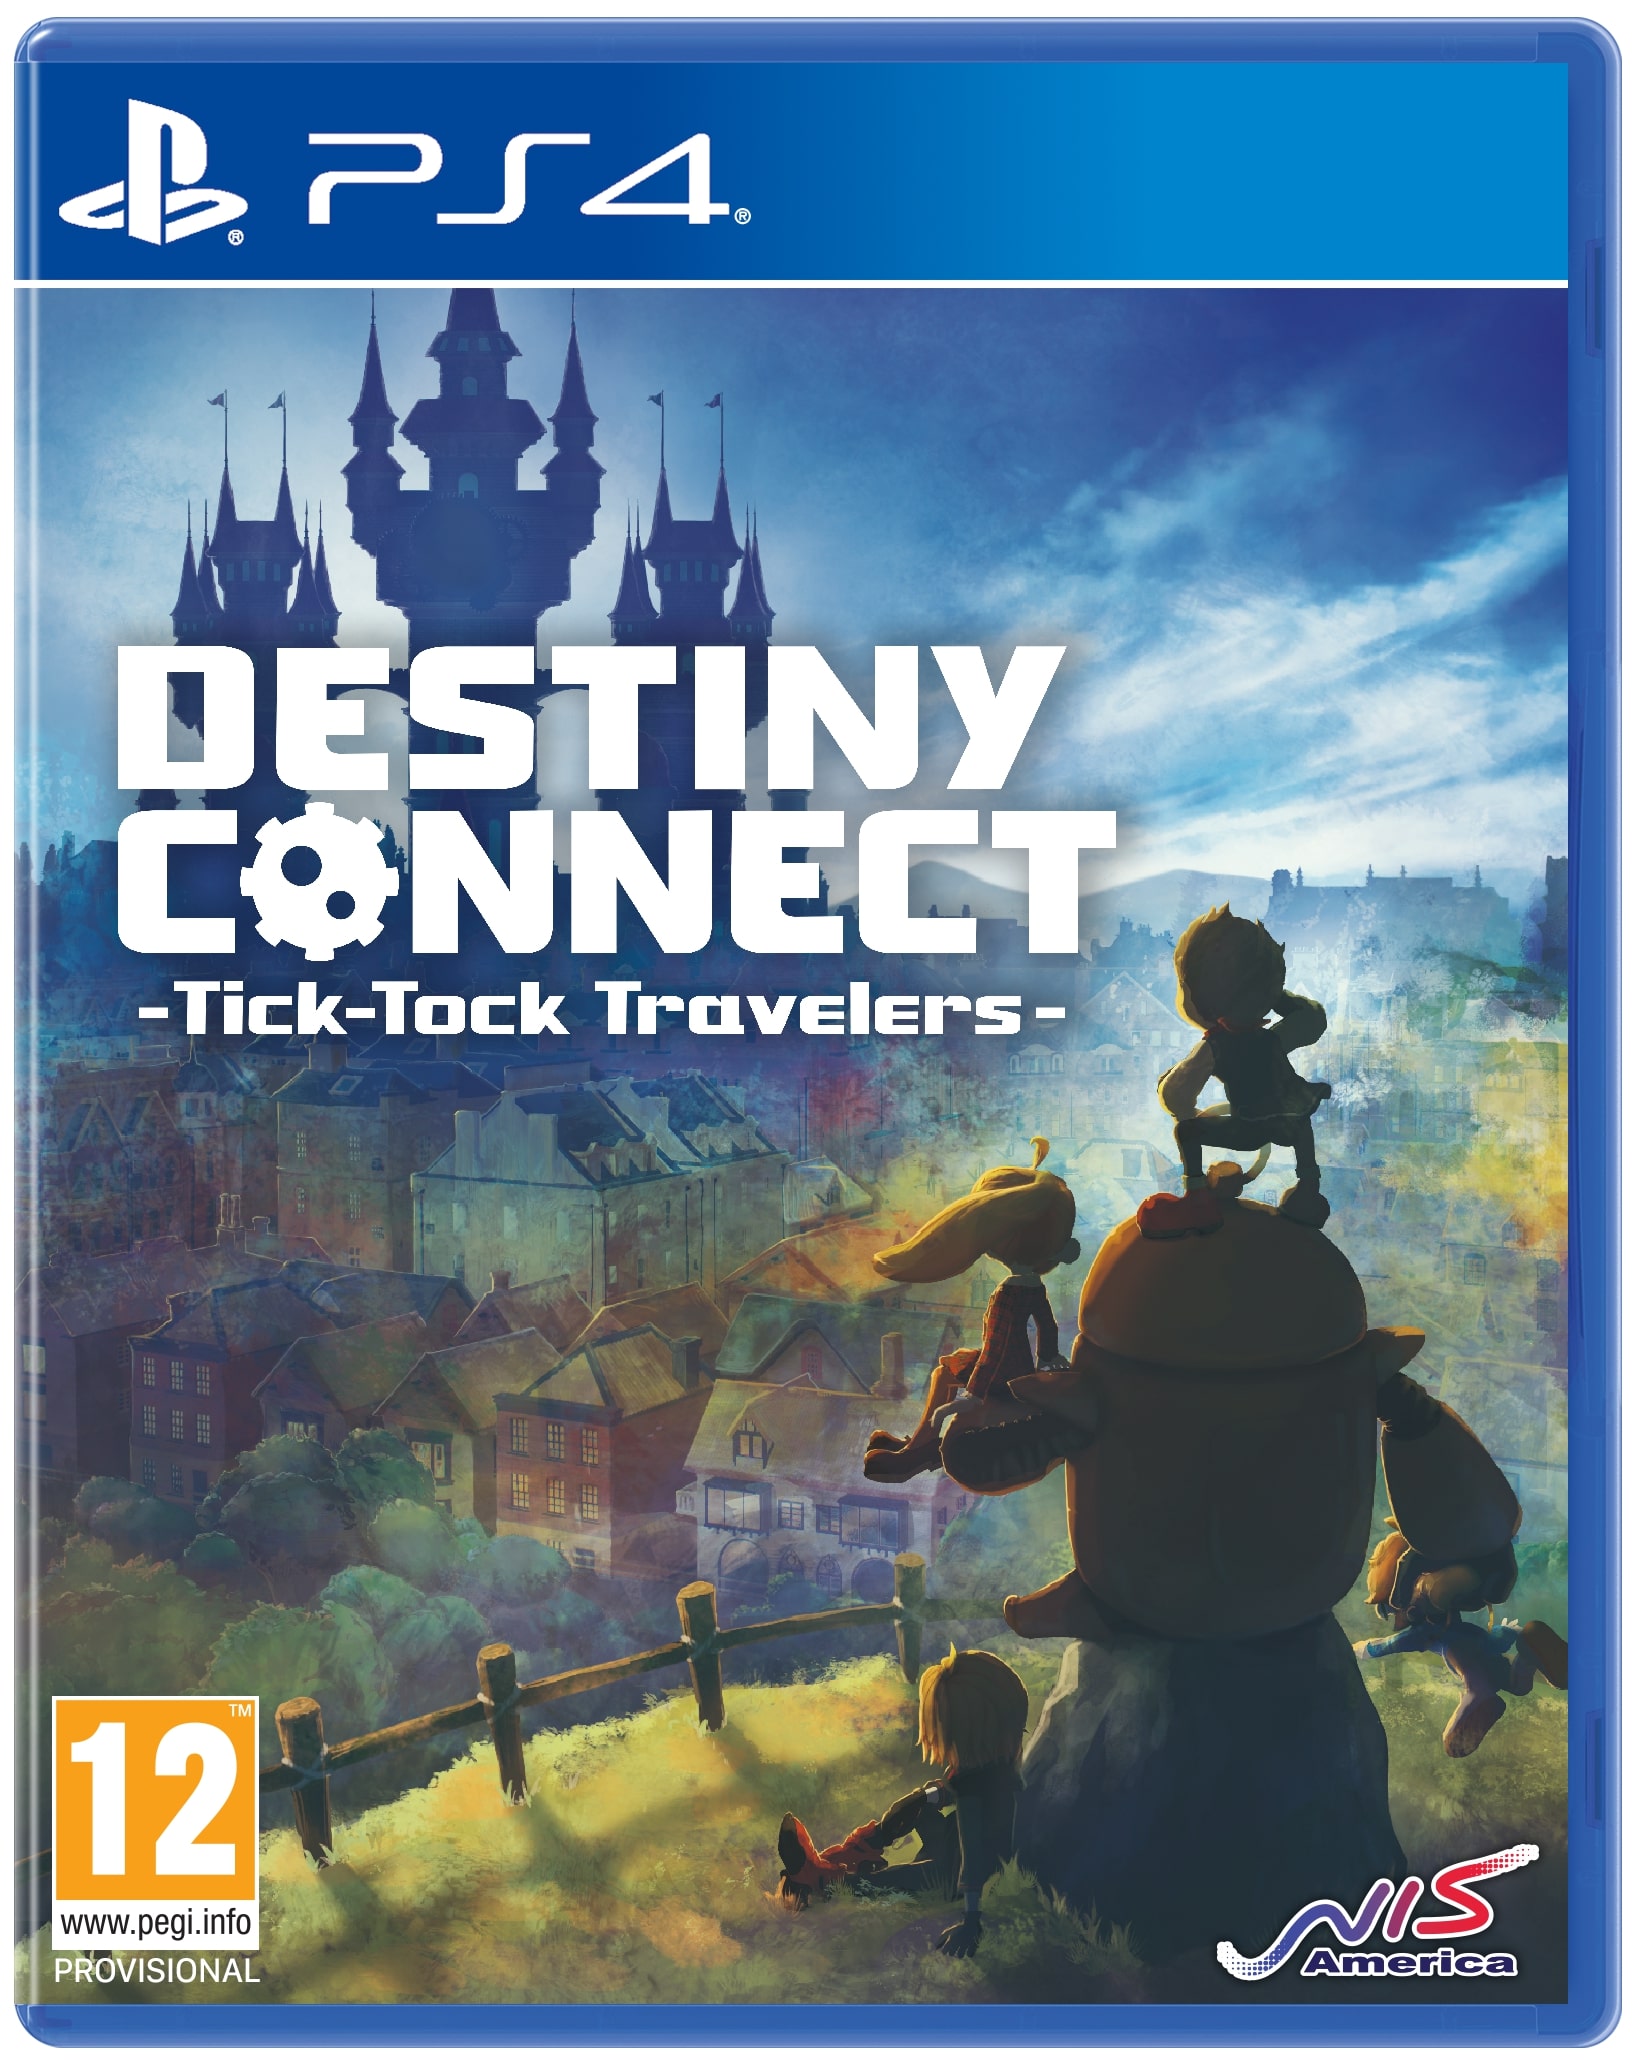 Destiny connect 8 8